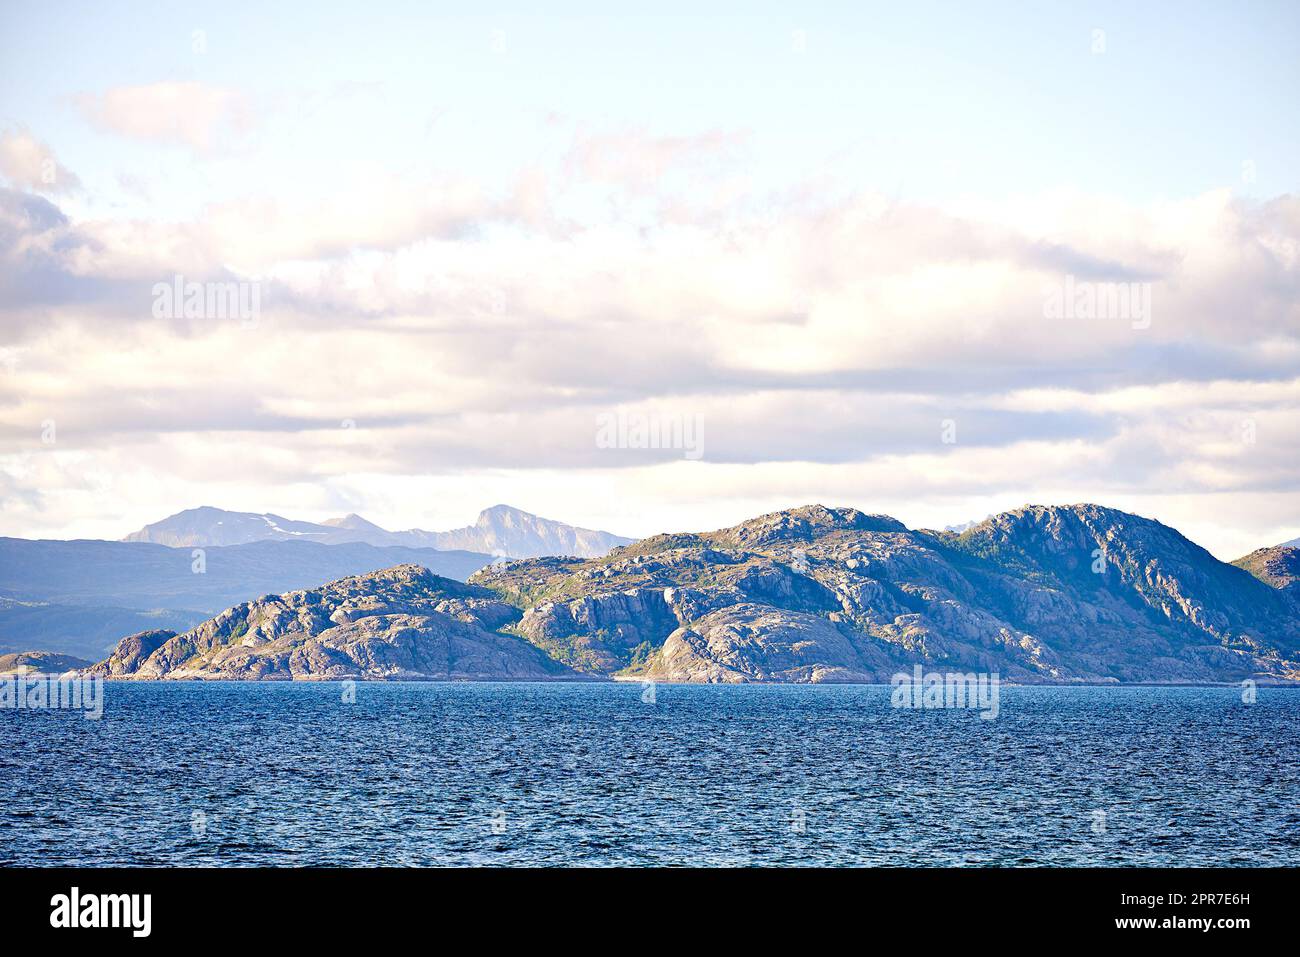 Malerischer Blick auf das Meer, die Berge, Felsen und Felsen in Norwegen. Gezeiten-Ozean-Wasserwellen, blauer Himmel mit Wolken und Kopierraum. Reisen und Tourismus im Ausland und im Ausland zu einem abgelegenen und friedlichen Reiseziel Stockfoto